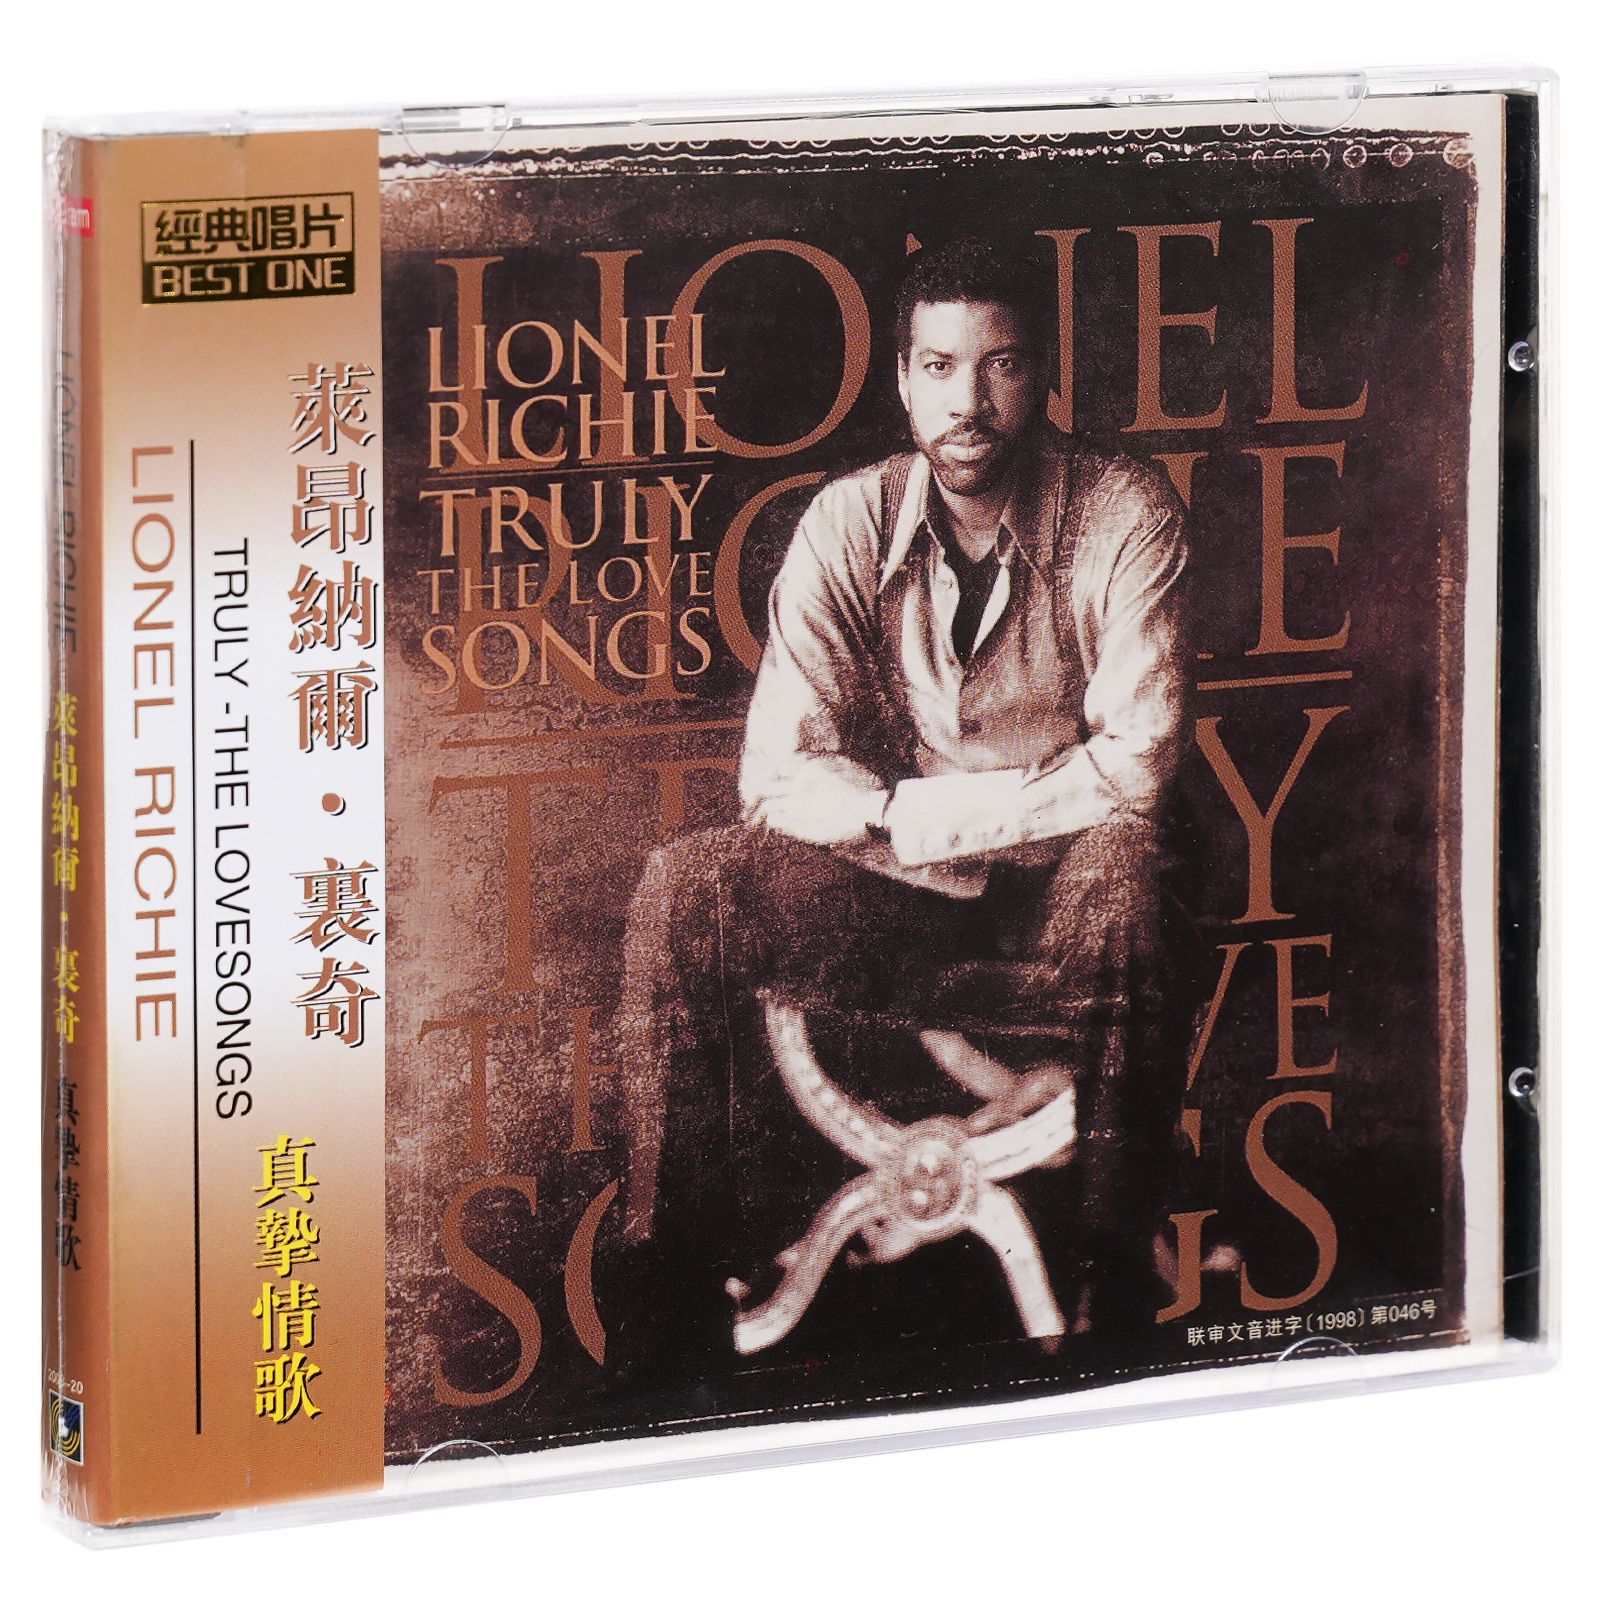 正版莱昂纳尔里奇 真挚情歌 Lionel Richie 专辑唱片CD